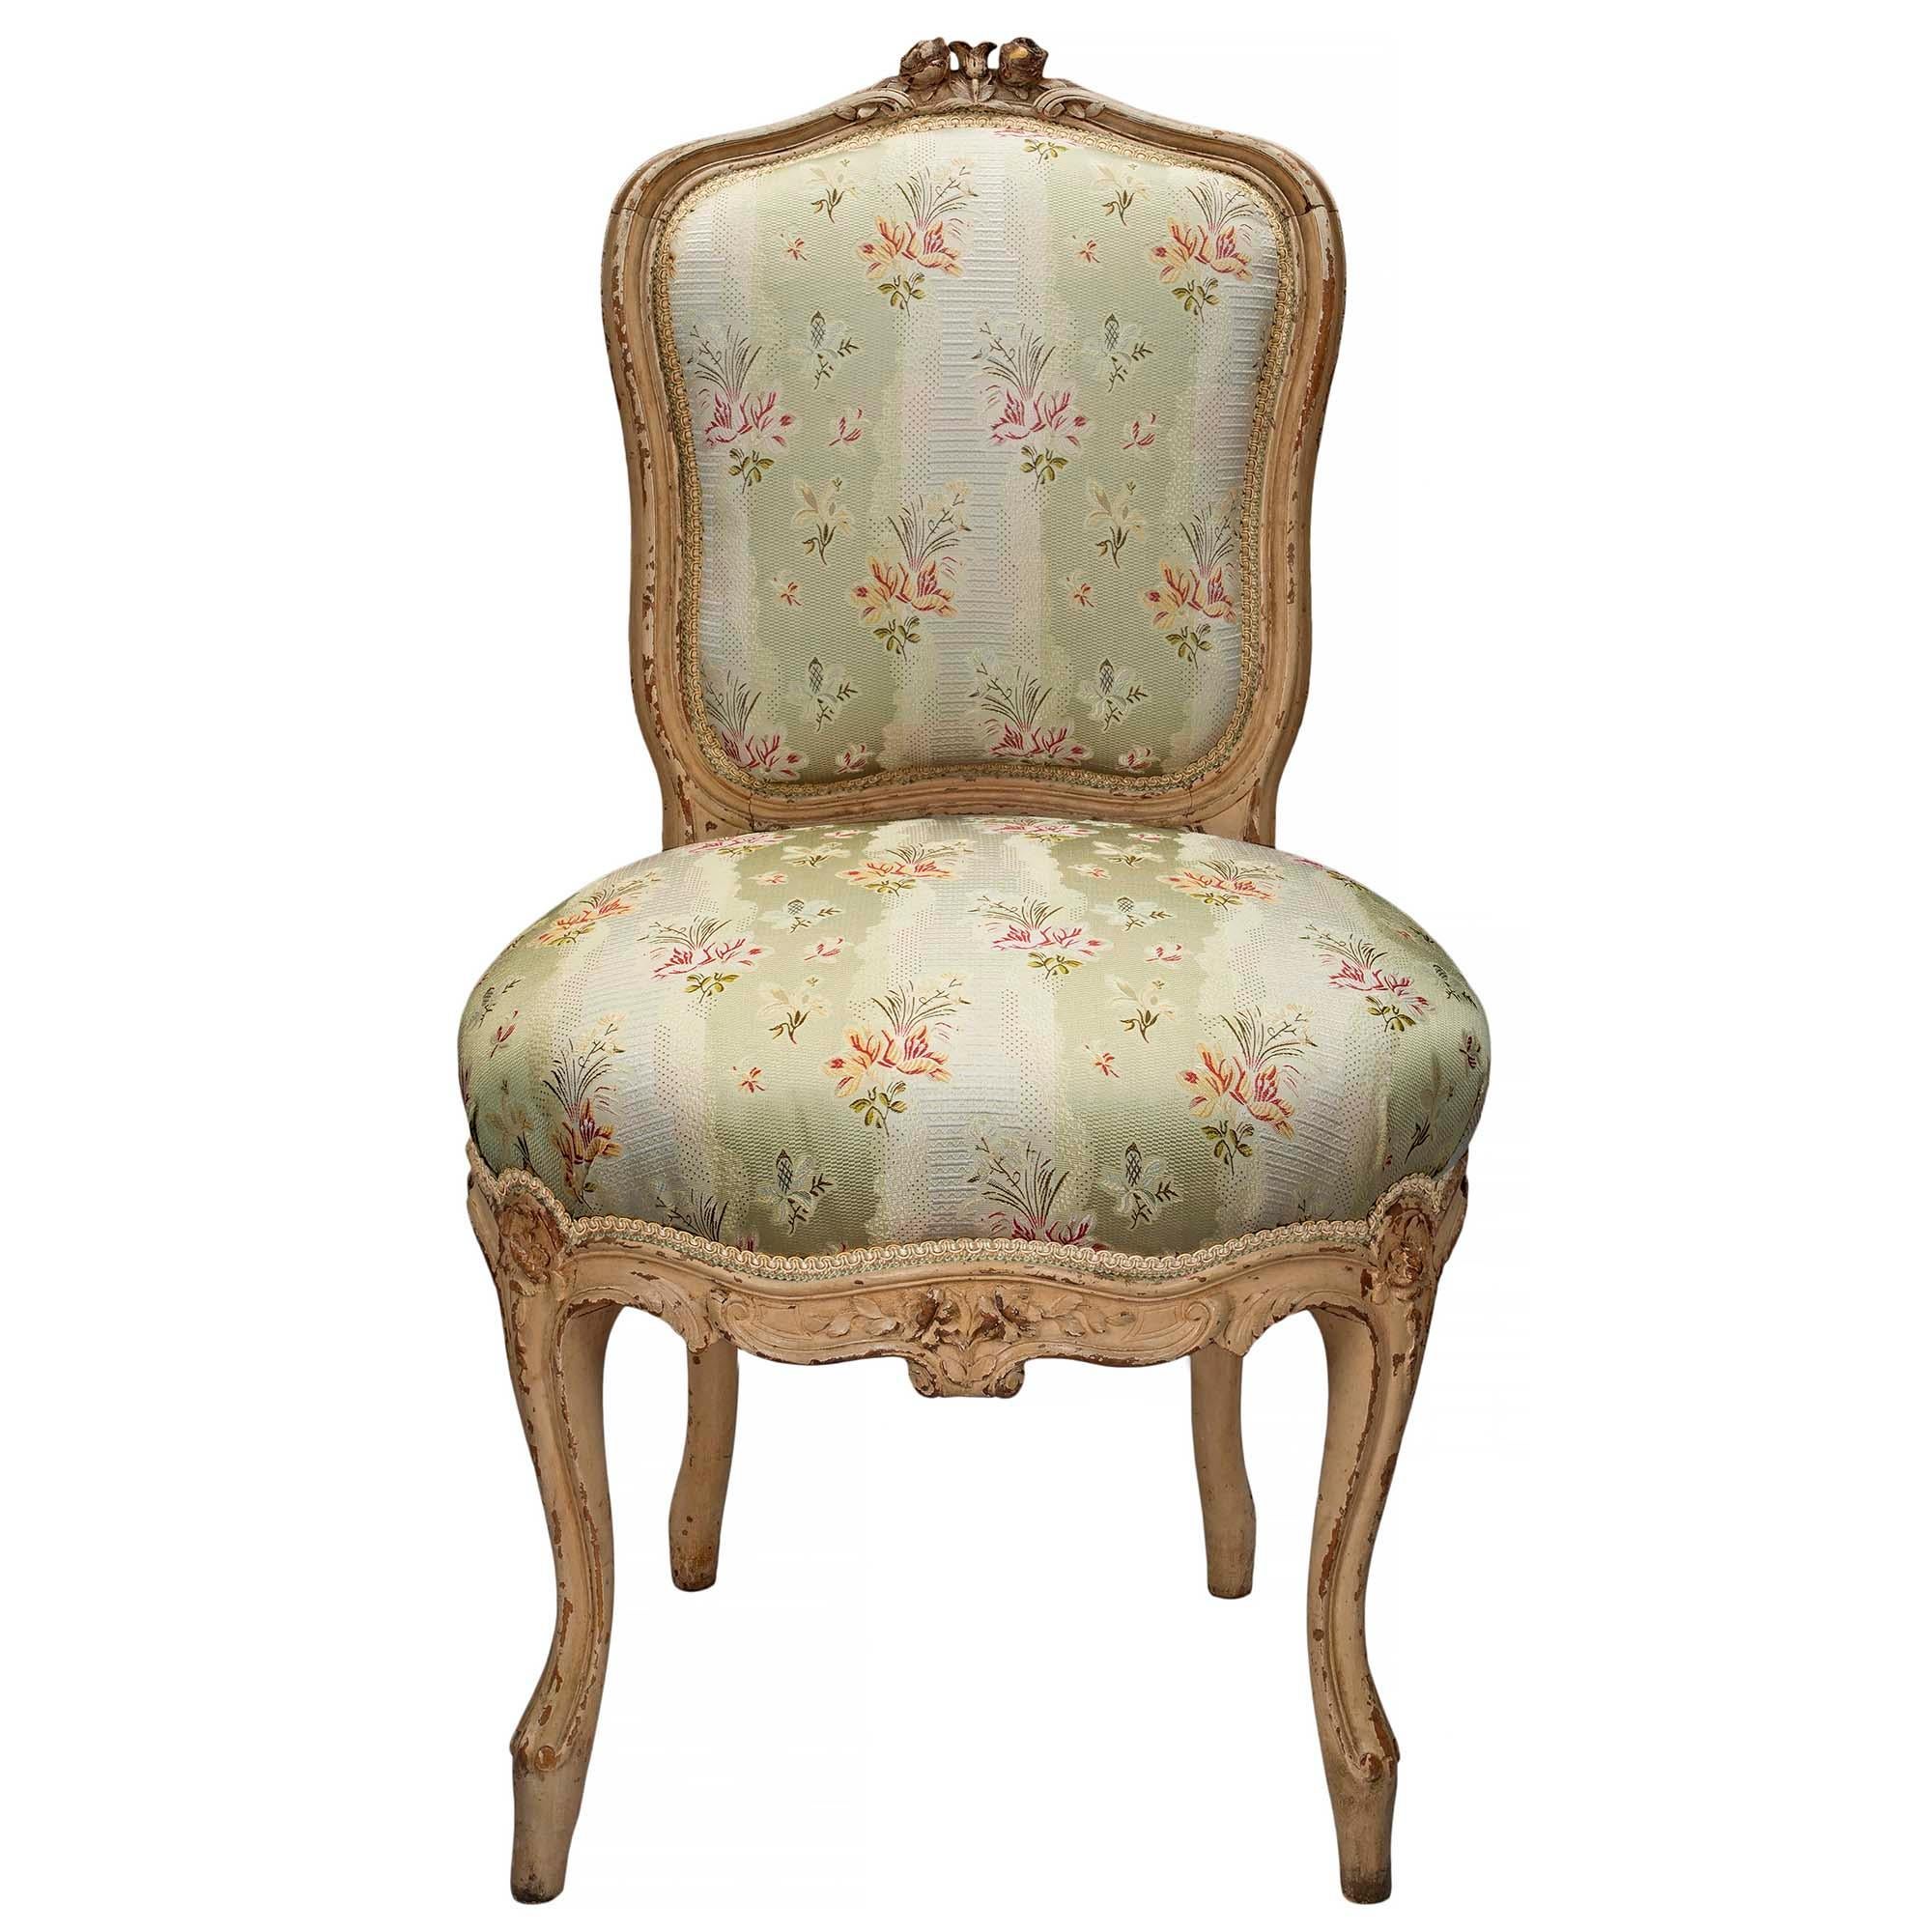 Ein exquisiter und eleganter Satz von vier französischen Stühlen im Stil Louis XV aus der Mitte des 19. Jahrhunderts, reich geschnitzt, patiniert und weiß. Die Garnitur steht auf s-förmig geschwungenen Cabriole-Beinen unterhalb eines Frieses mit